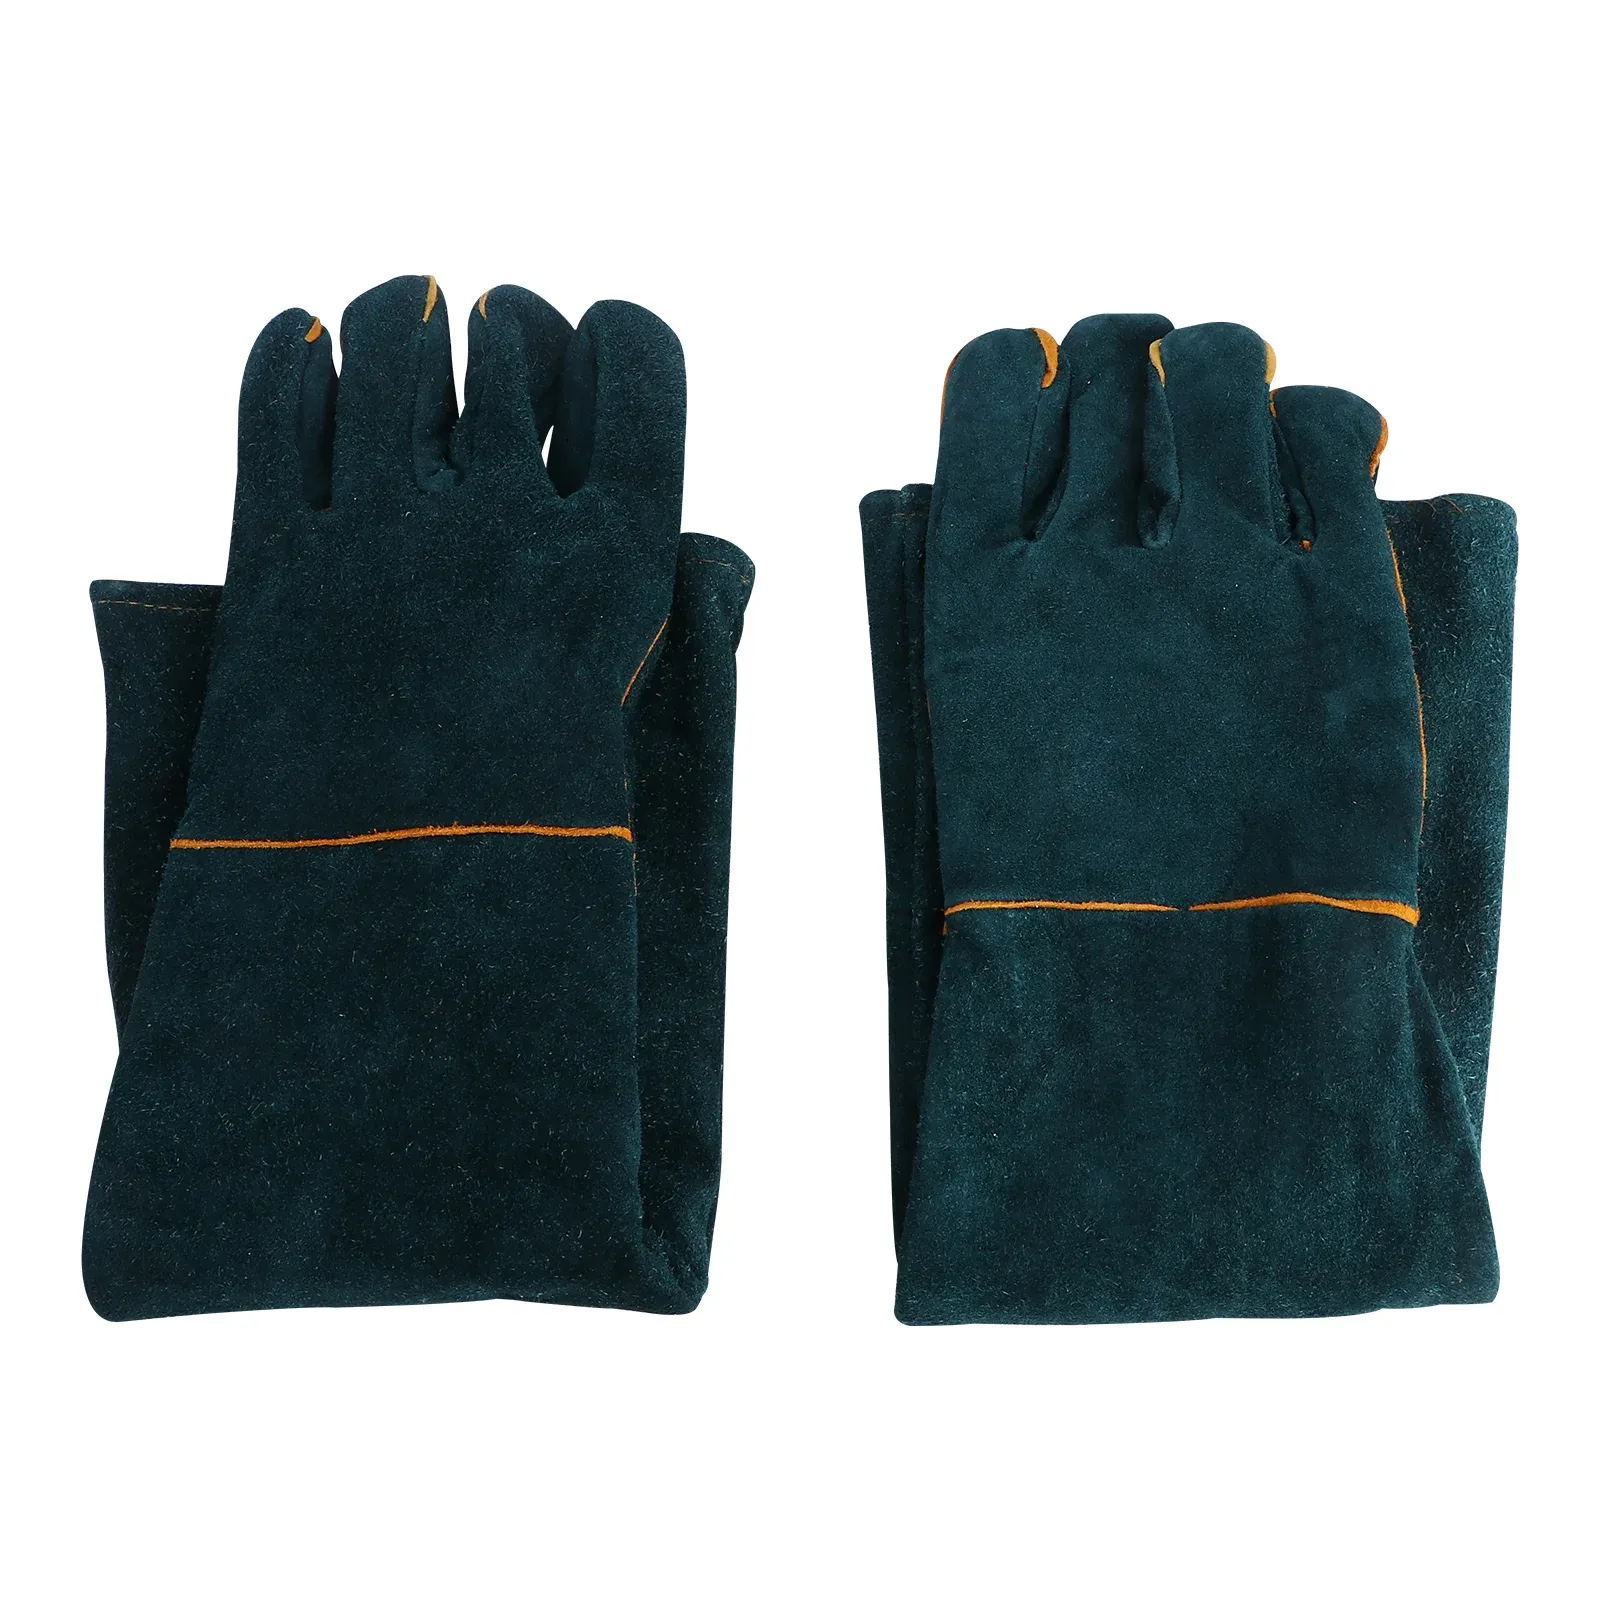 Gants 1 paire de 60 cm de long épaississement des gants de vache gants de soudage gants de protection antibite gants à manches longues gants de résistance à la chaleur gants pour